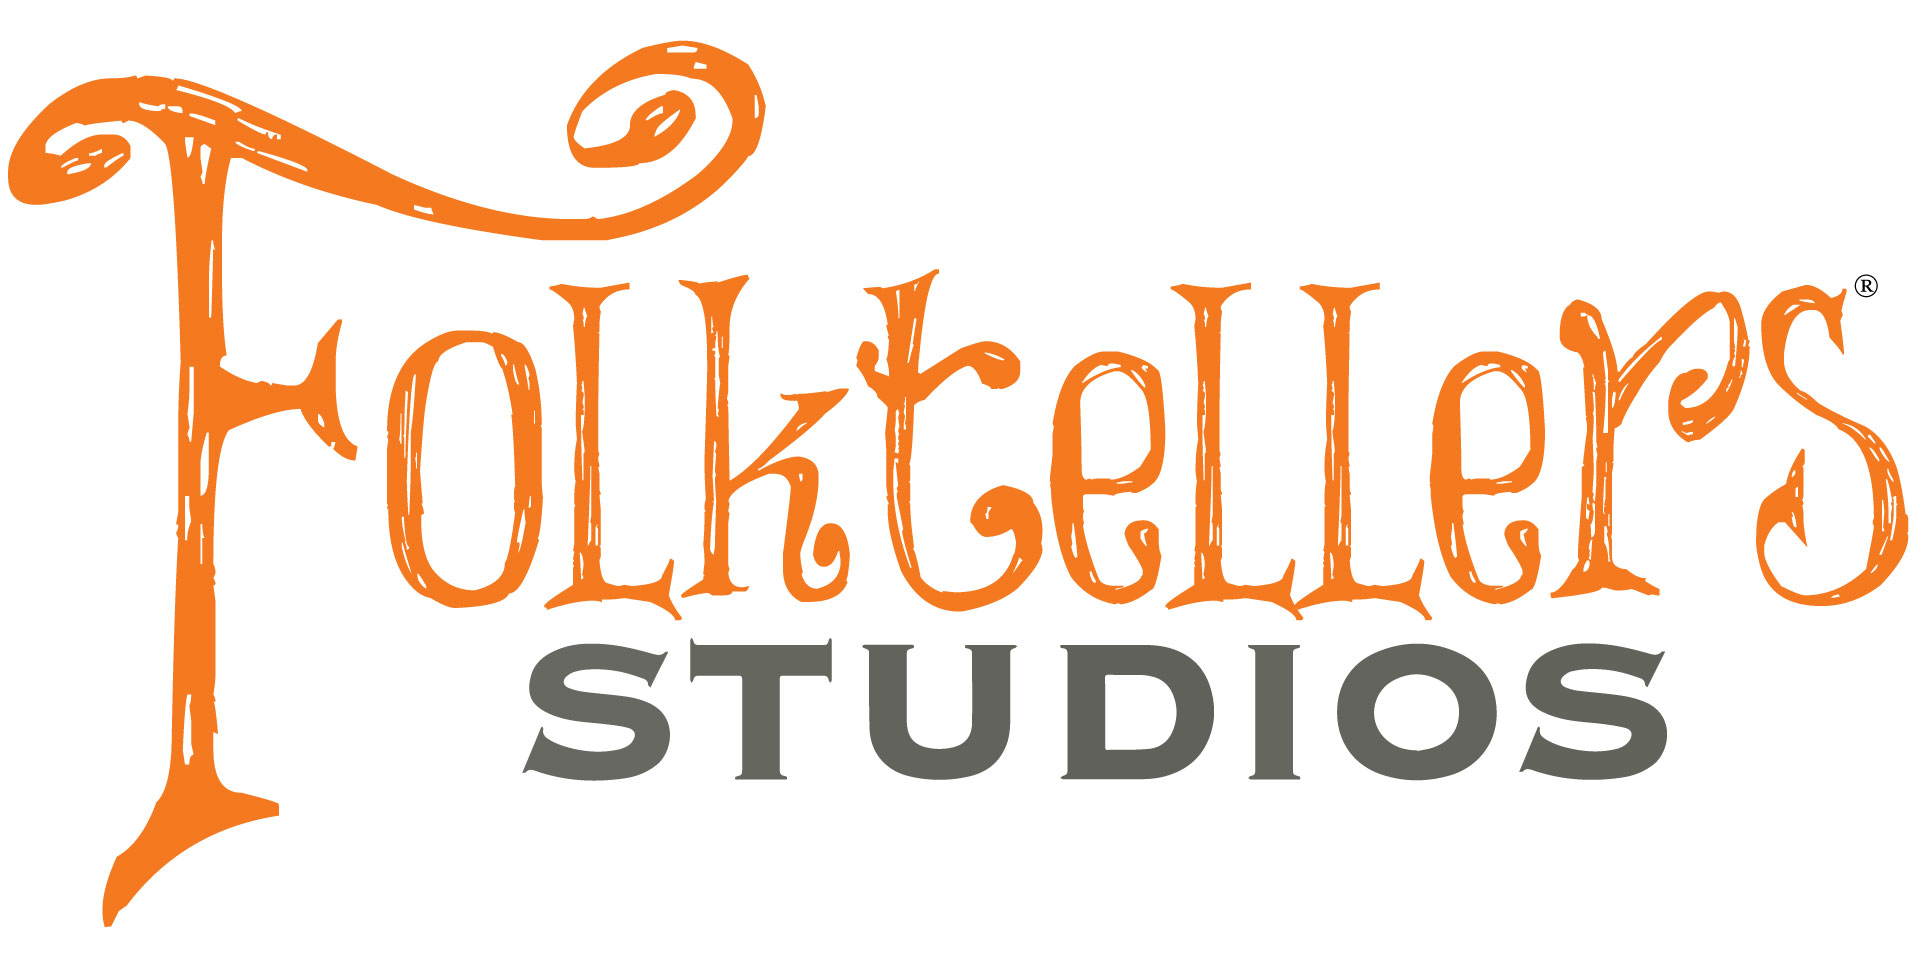 Folktellers-Studios-Logo-1920x960.jpg 1920x960